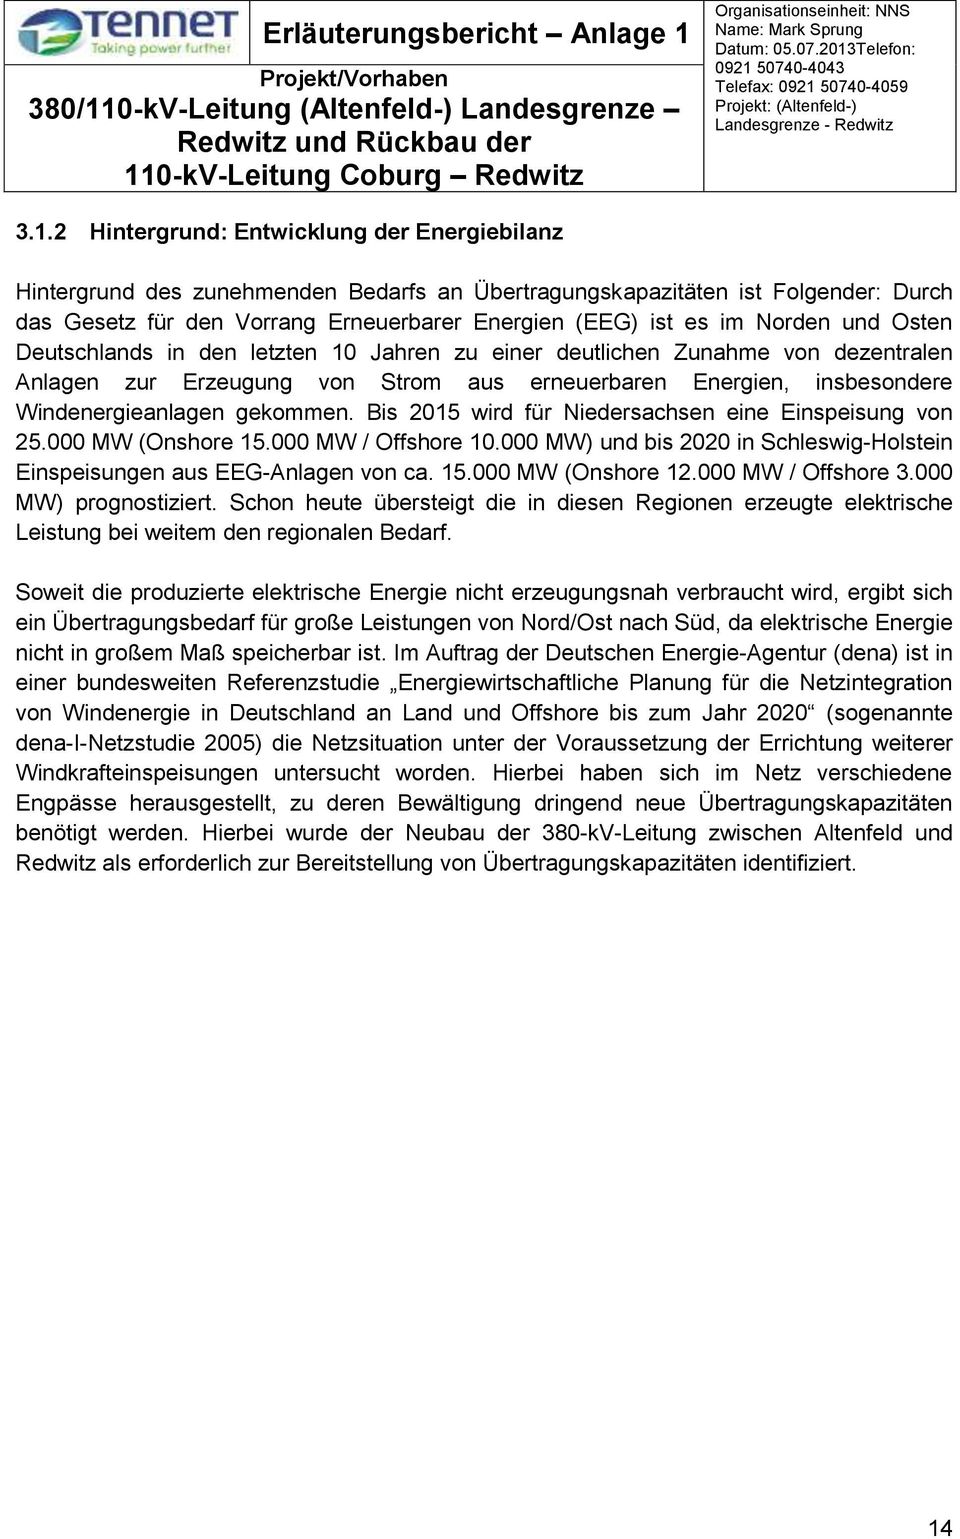 Bis 2015 wird für Niedersachsen eine Einspeisung von 25.000 MW (Onshore 15.000 MW / Offshore 10.000 MW) und bis 2020 in Schleswig-Holstein Einspeisungen aus EEG-Anlagen von ca. 15.000 MW (Onshore 12.